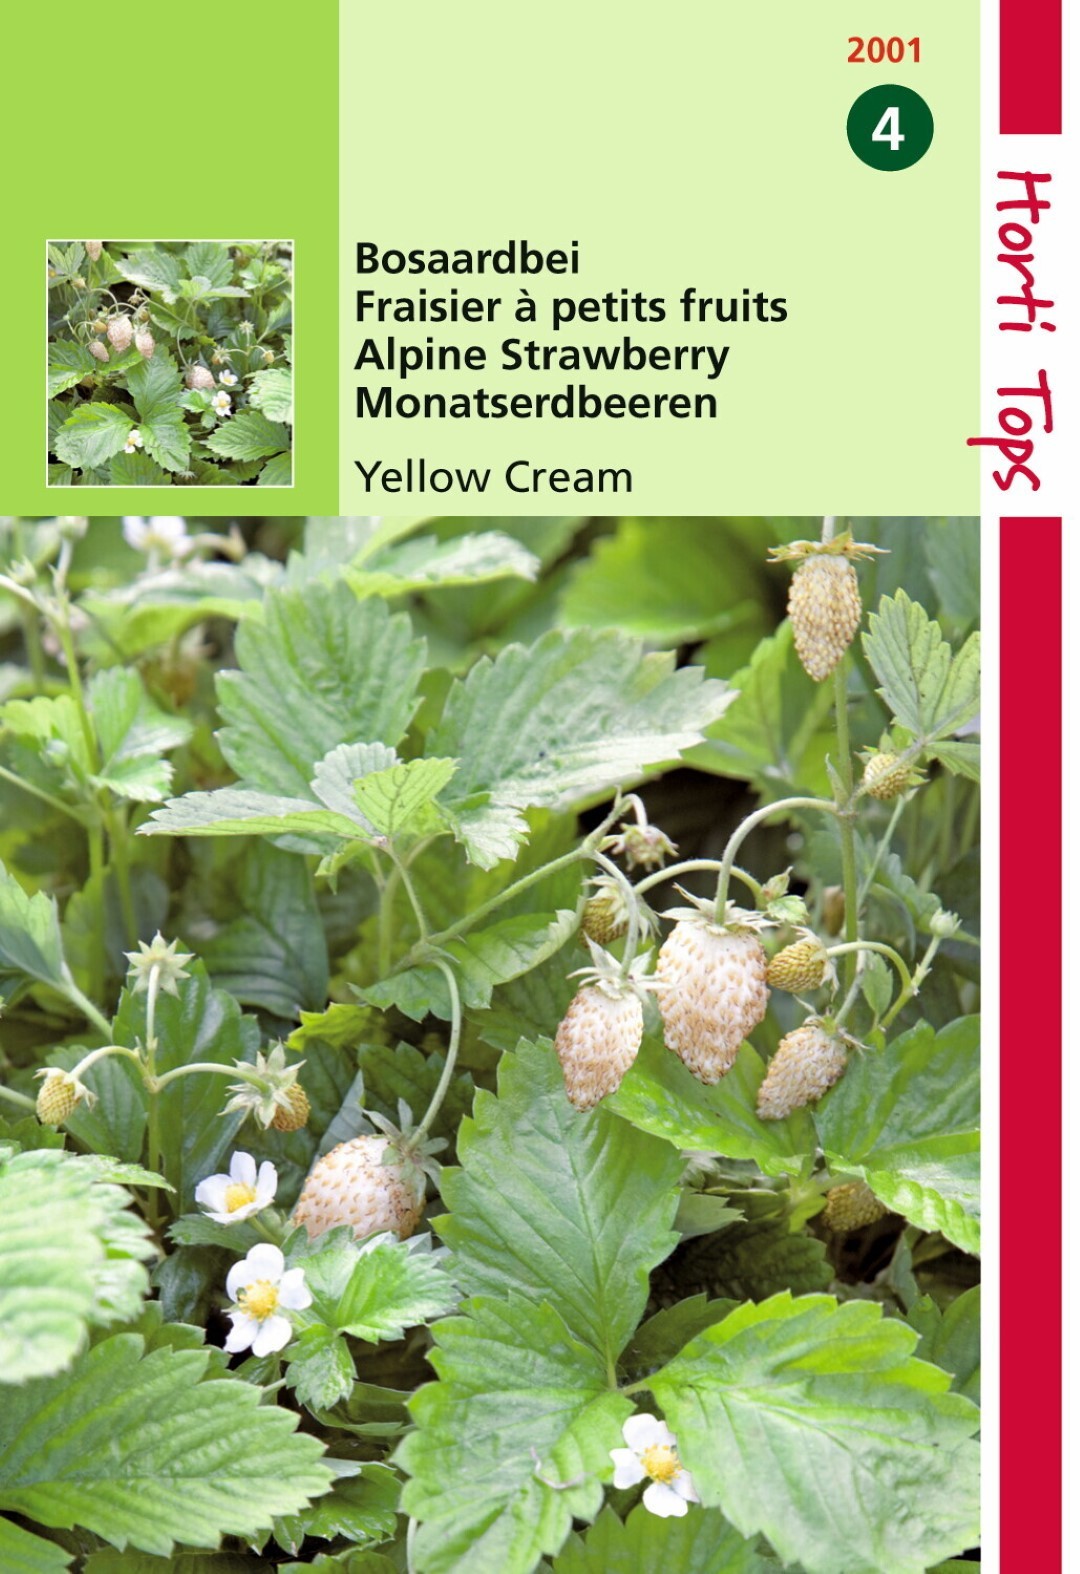 Hortitops Aardbeien Yellow Cream - 